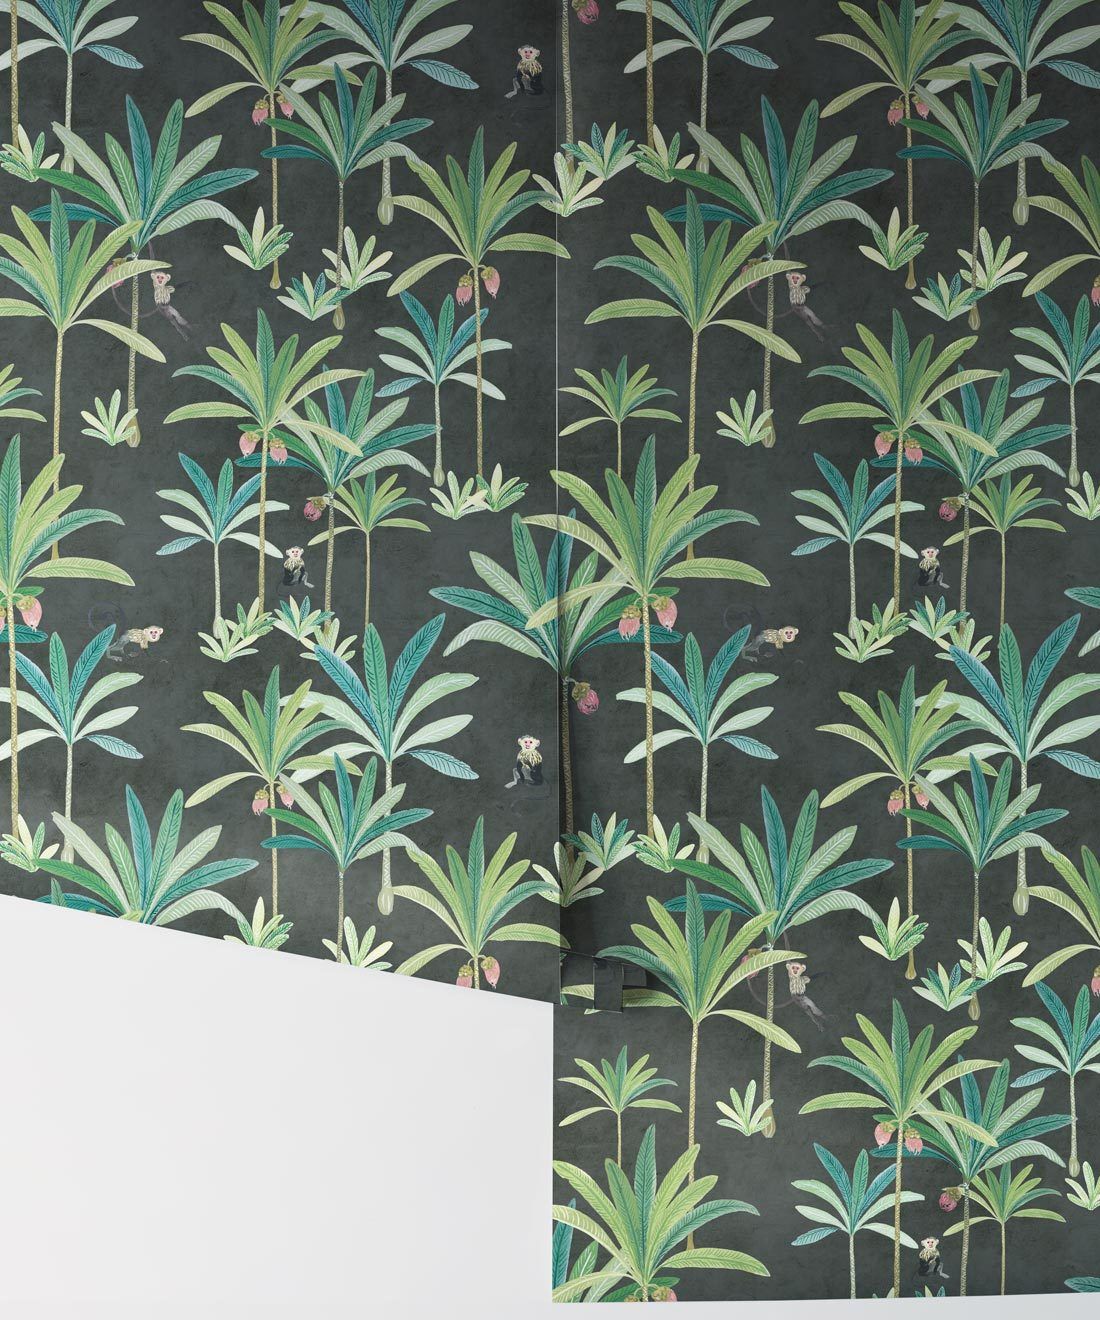 Monkey Palms Wallpaper